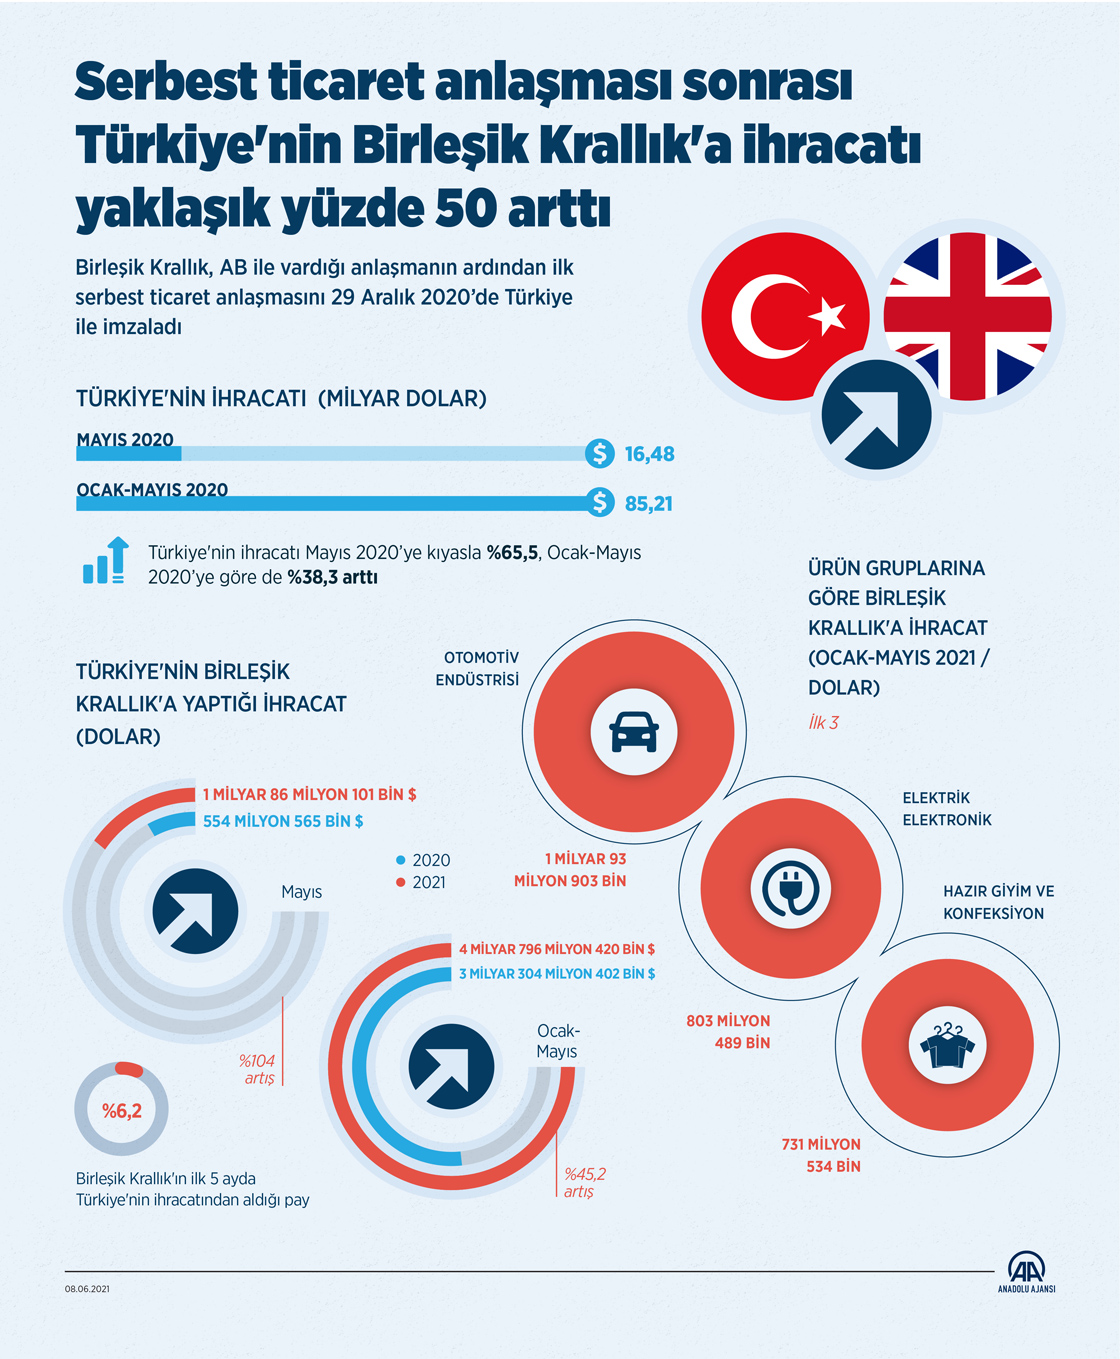 Serbest ticaret anlaşması sonrası Türkiye'nin Birleşik Krallık'a ihracatı yaklaşık yüzde 50 arttı